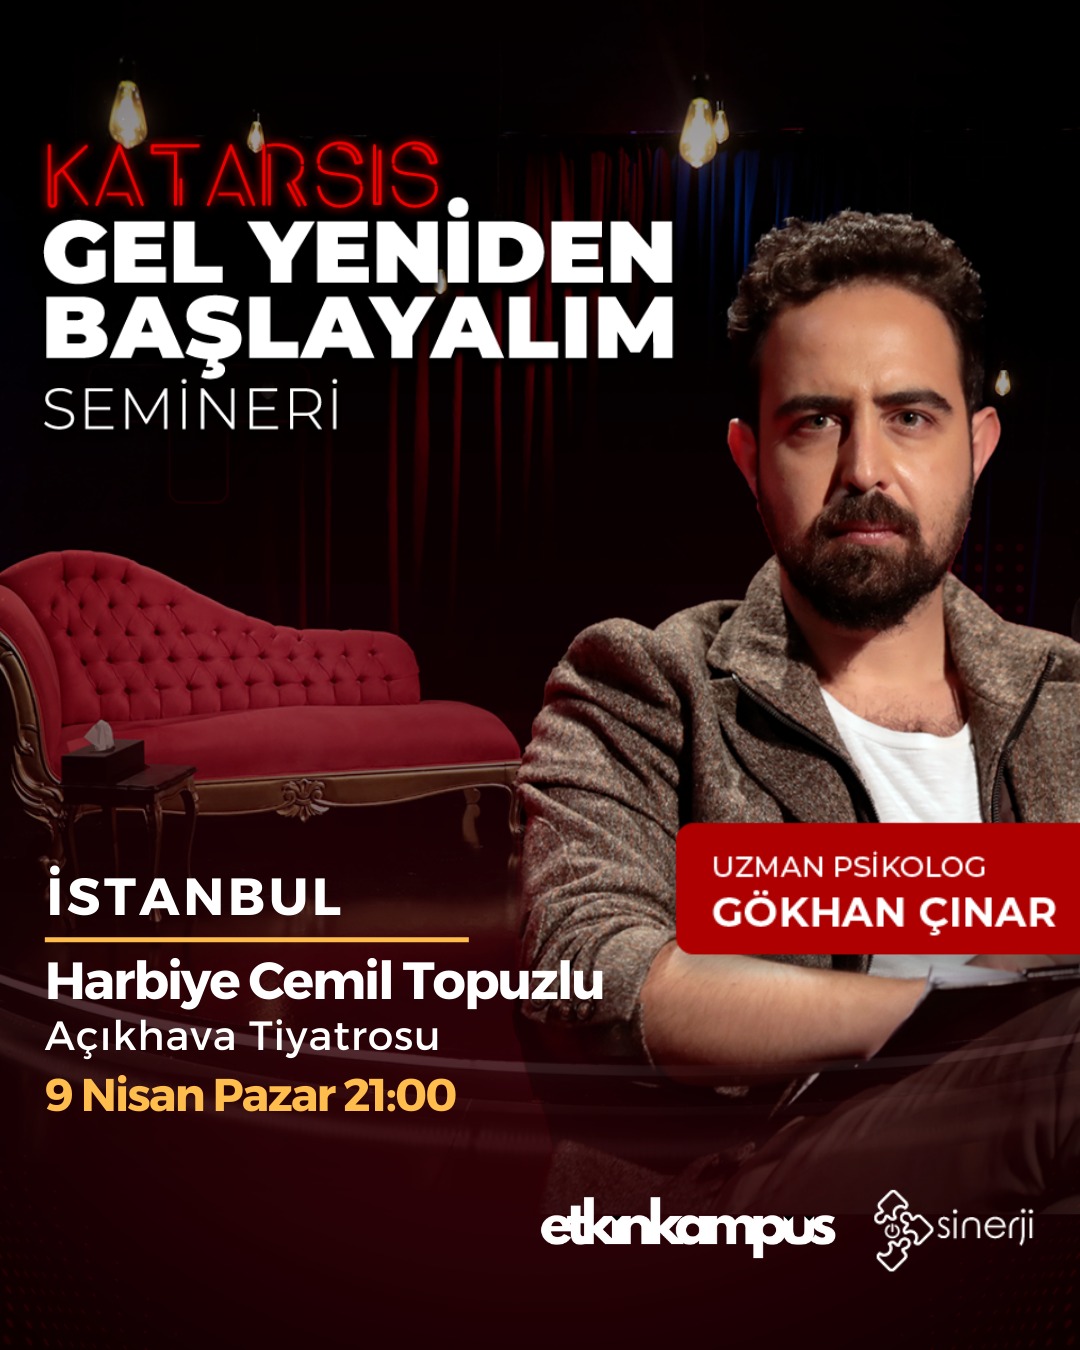 İstanbul Katarsis Gel Yeniden Başlayalım Semineri - Tam Bilet